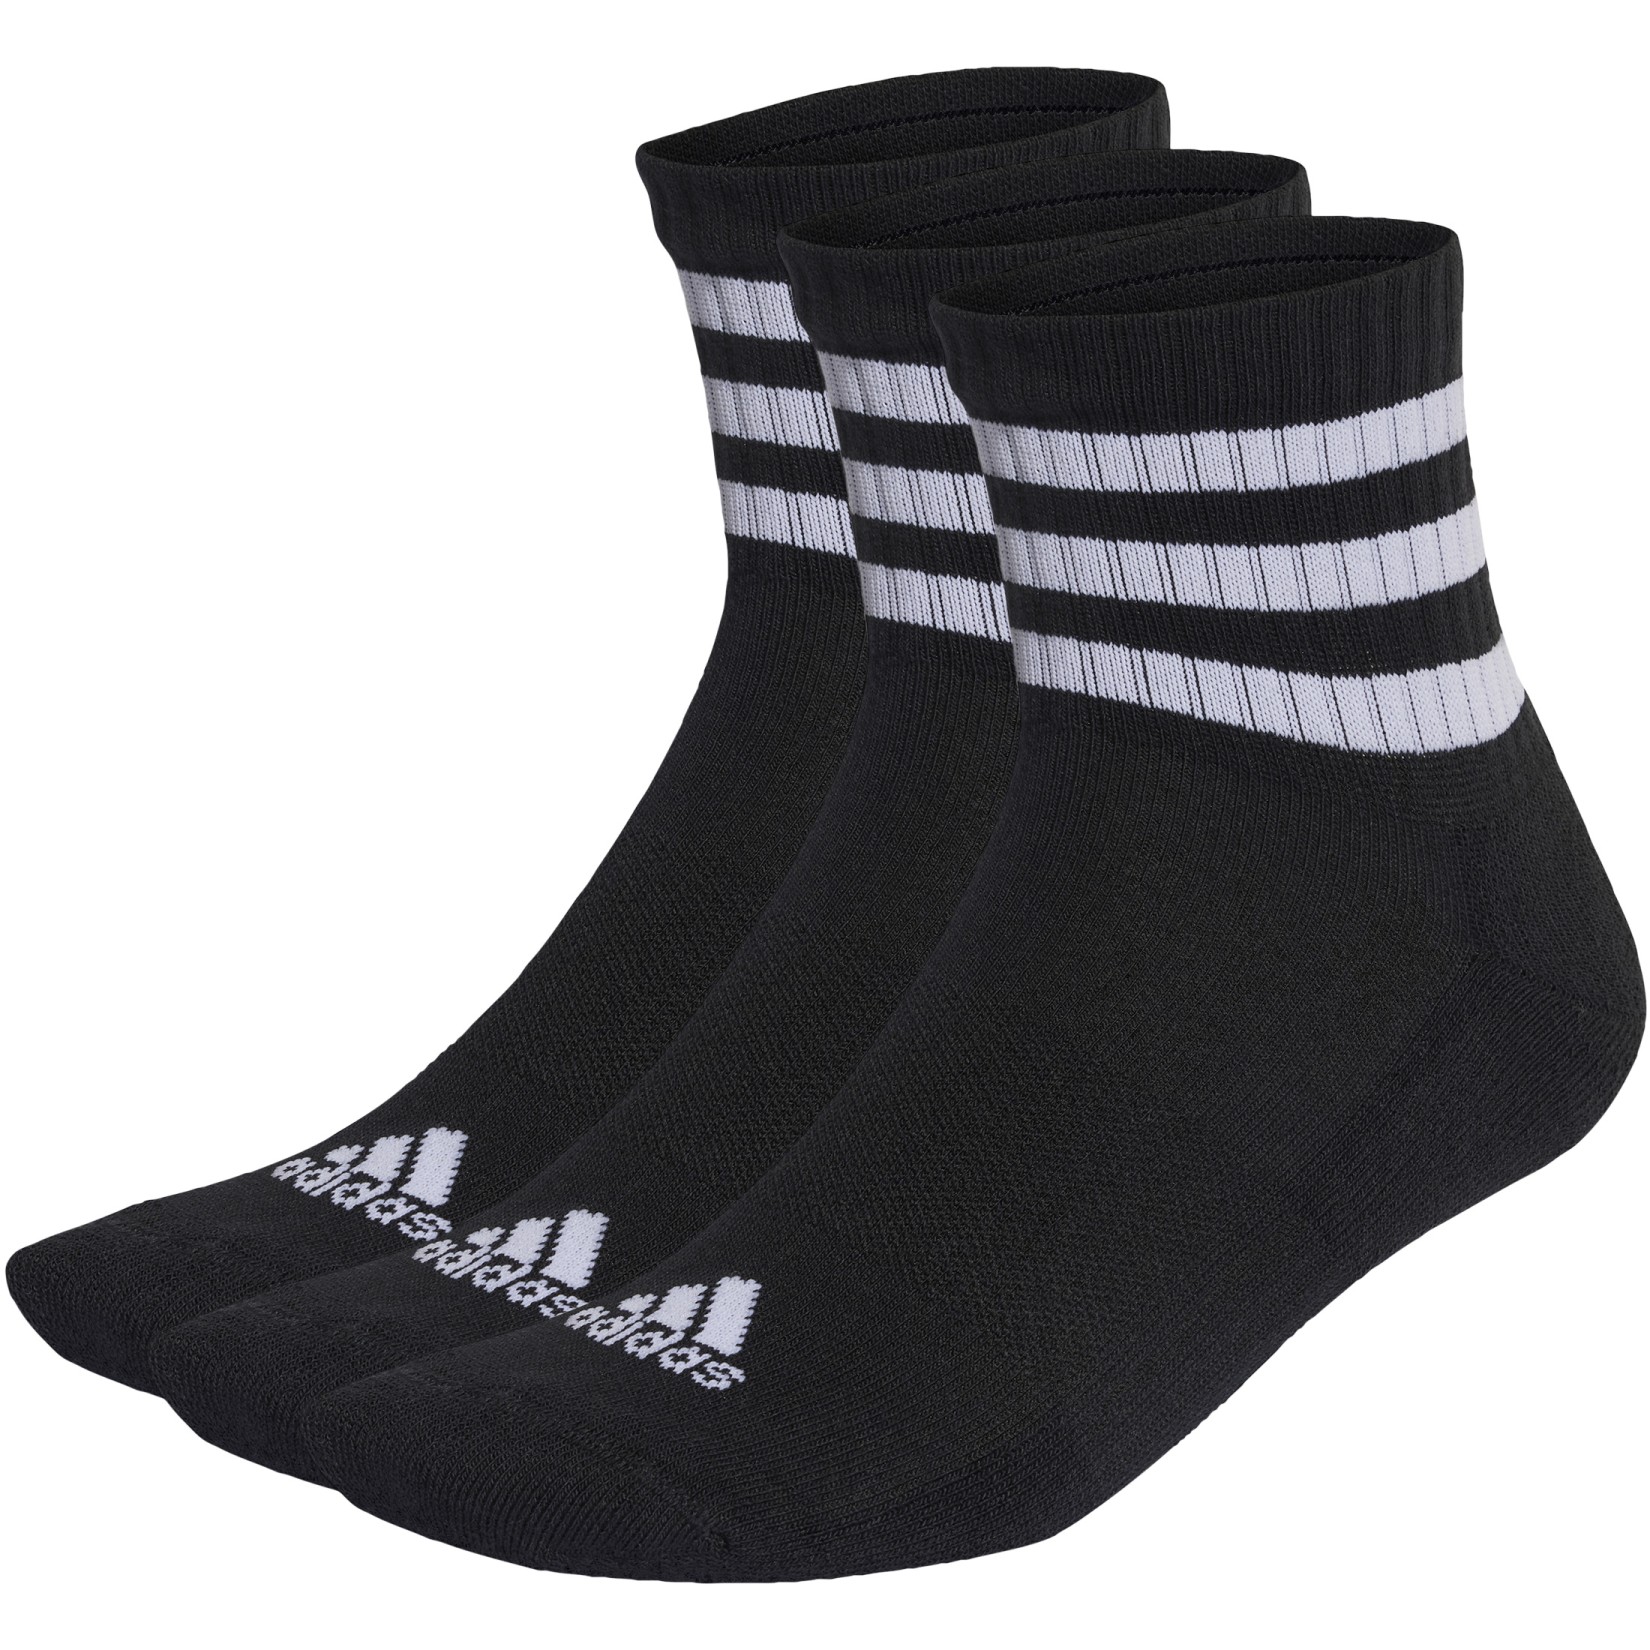 Produktbild von adidas 3-Streifen Cushioned Mid Cut Socken - 3 Paar - schwarz/weiß IC1317